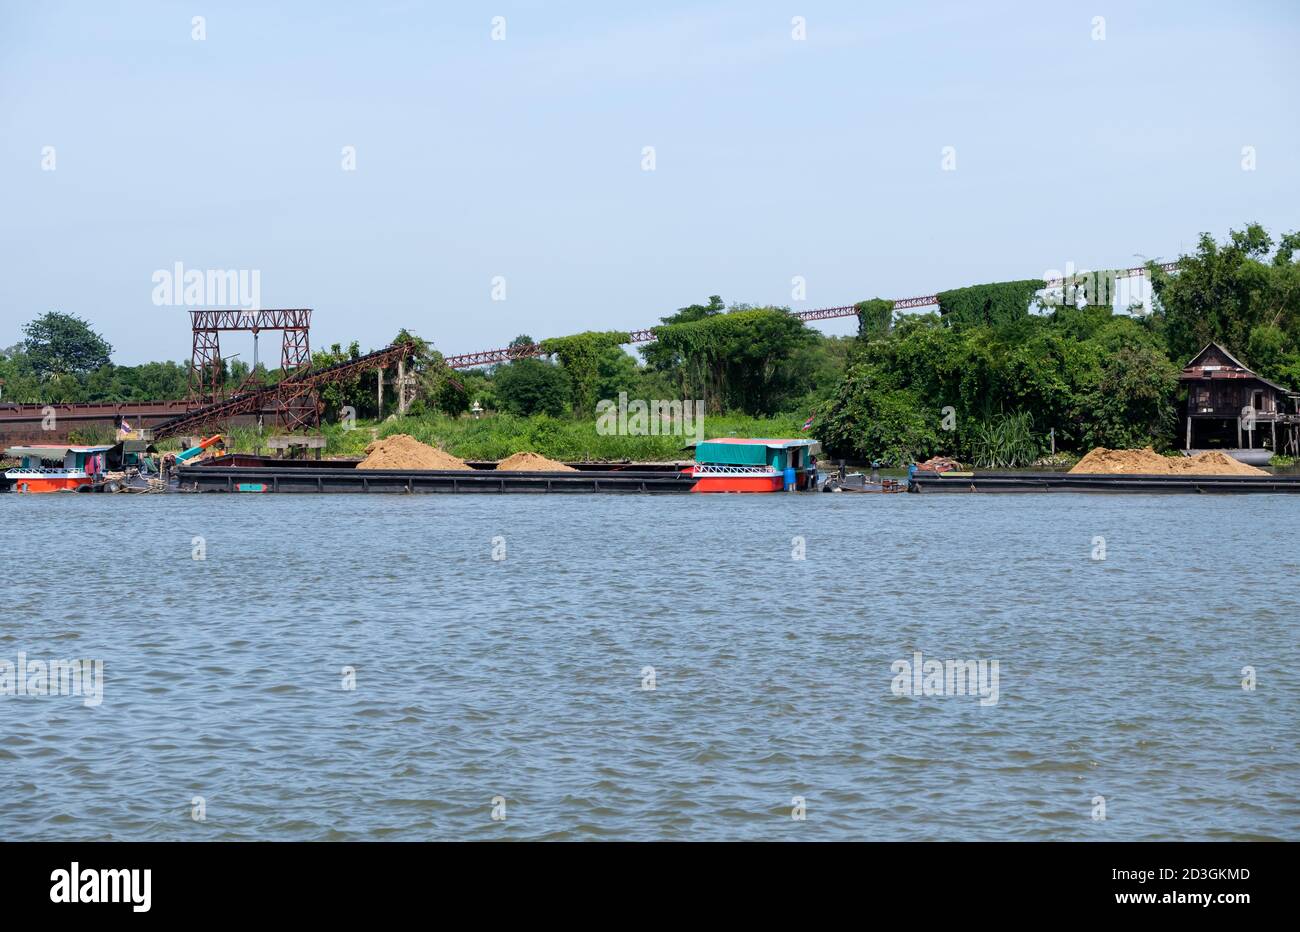 Das große Frachtschiff lädt den Sand für den Transport zur Baustelle, während es die verlassene Fabrik in der Nähe des großen Flusses passiert. Stockfoto